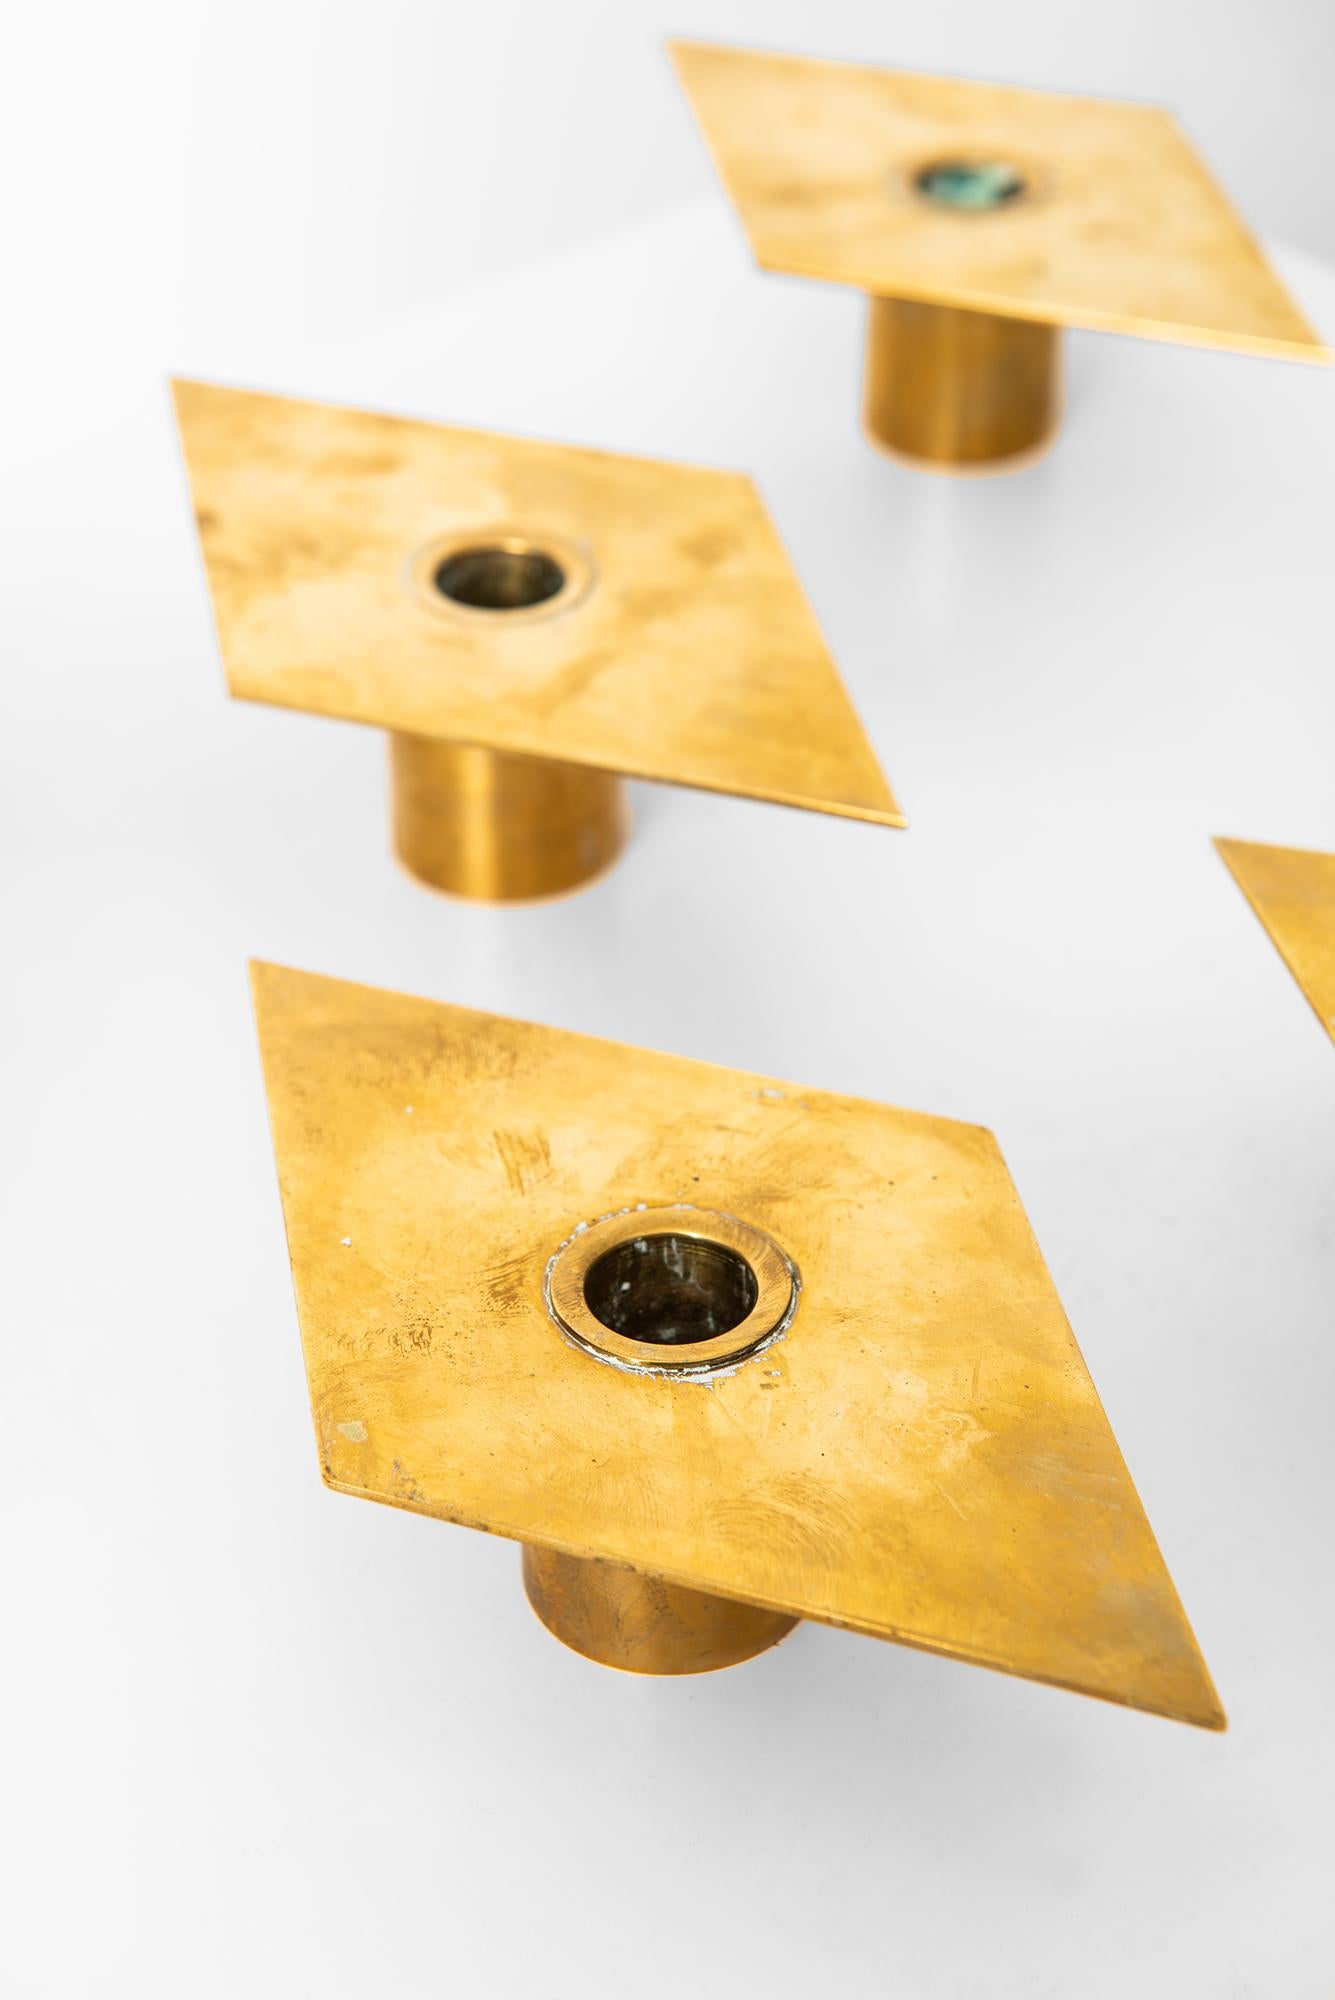 Set of 6 brass candlesticks model Rhomb designed by Sigurd Persson. Produced by Sigurd Persson Design in Sweden.